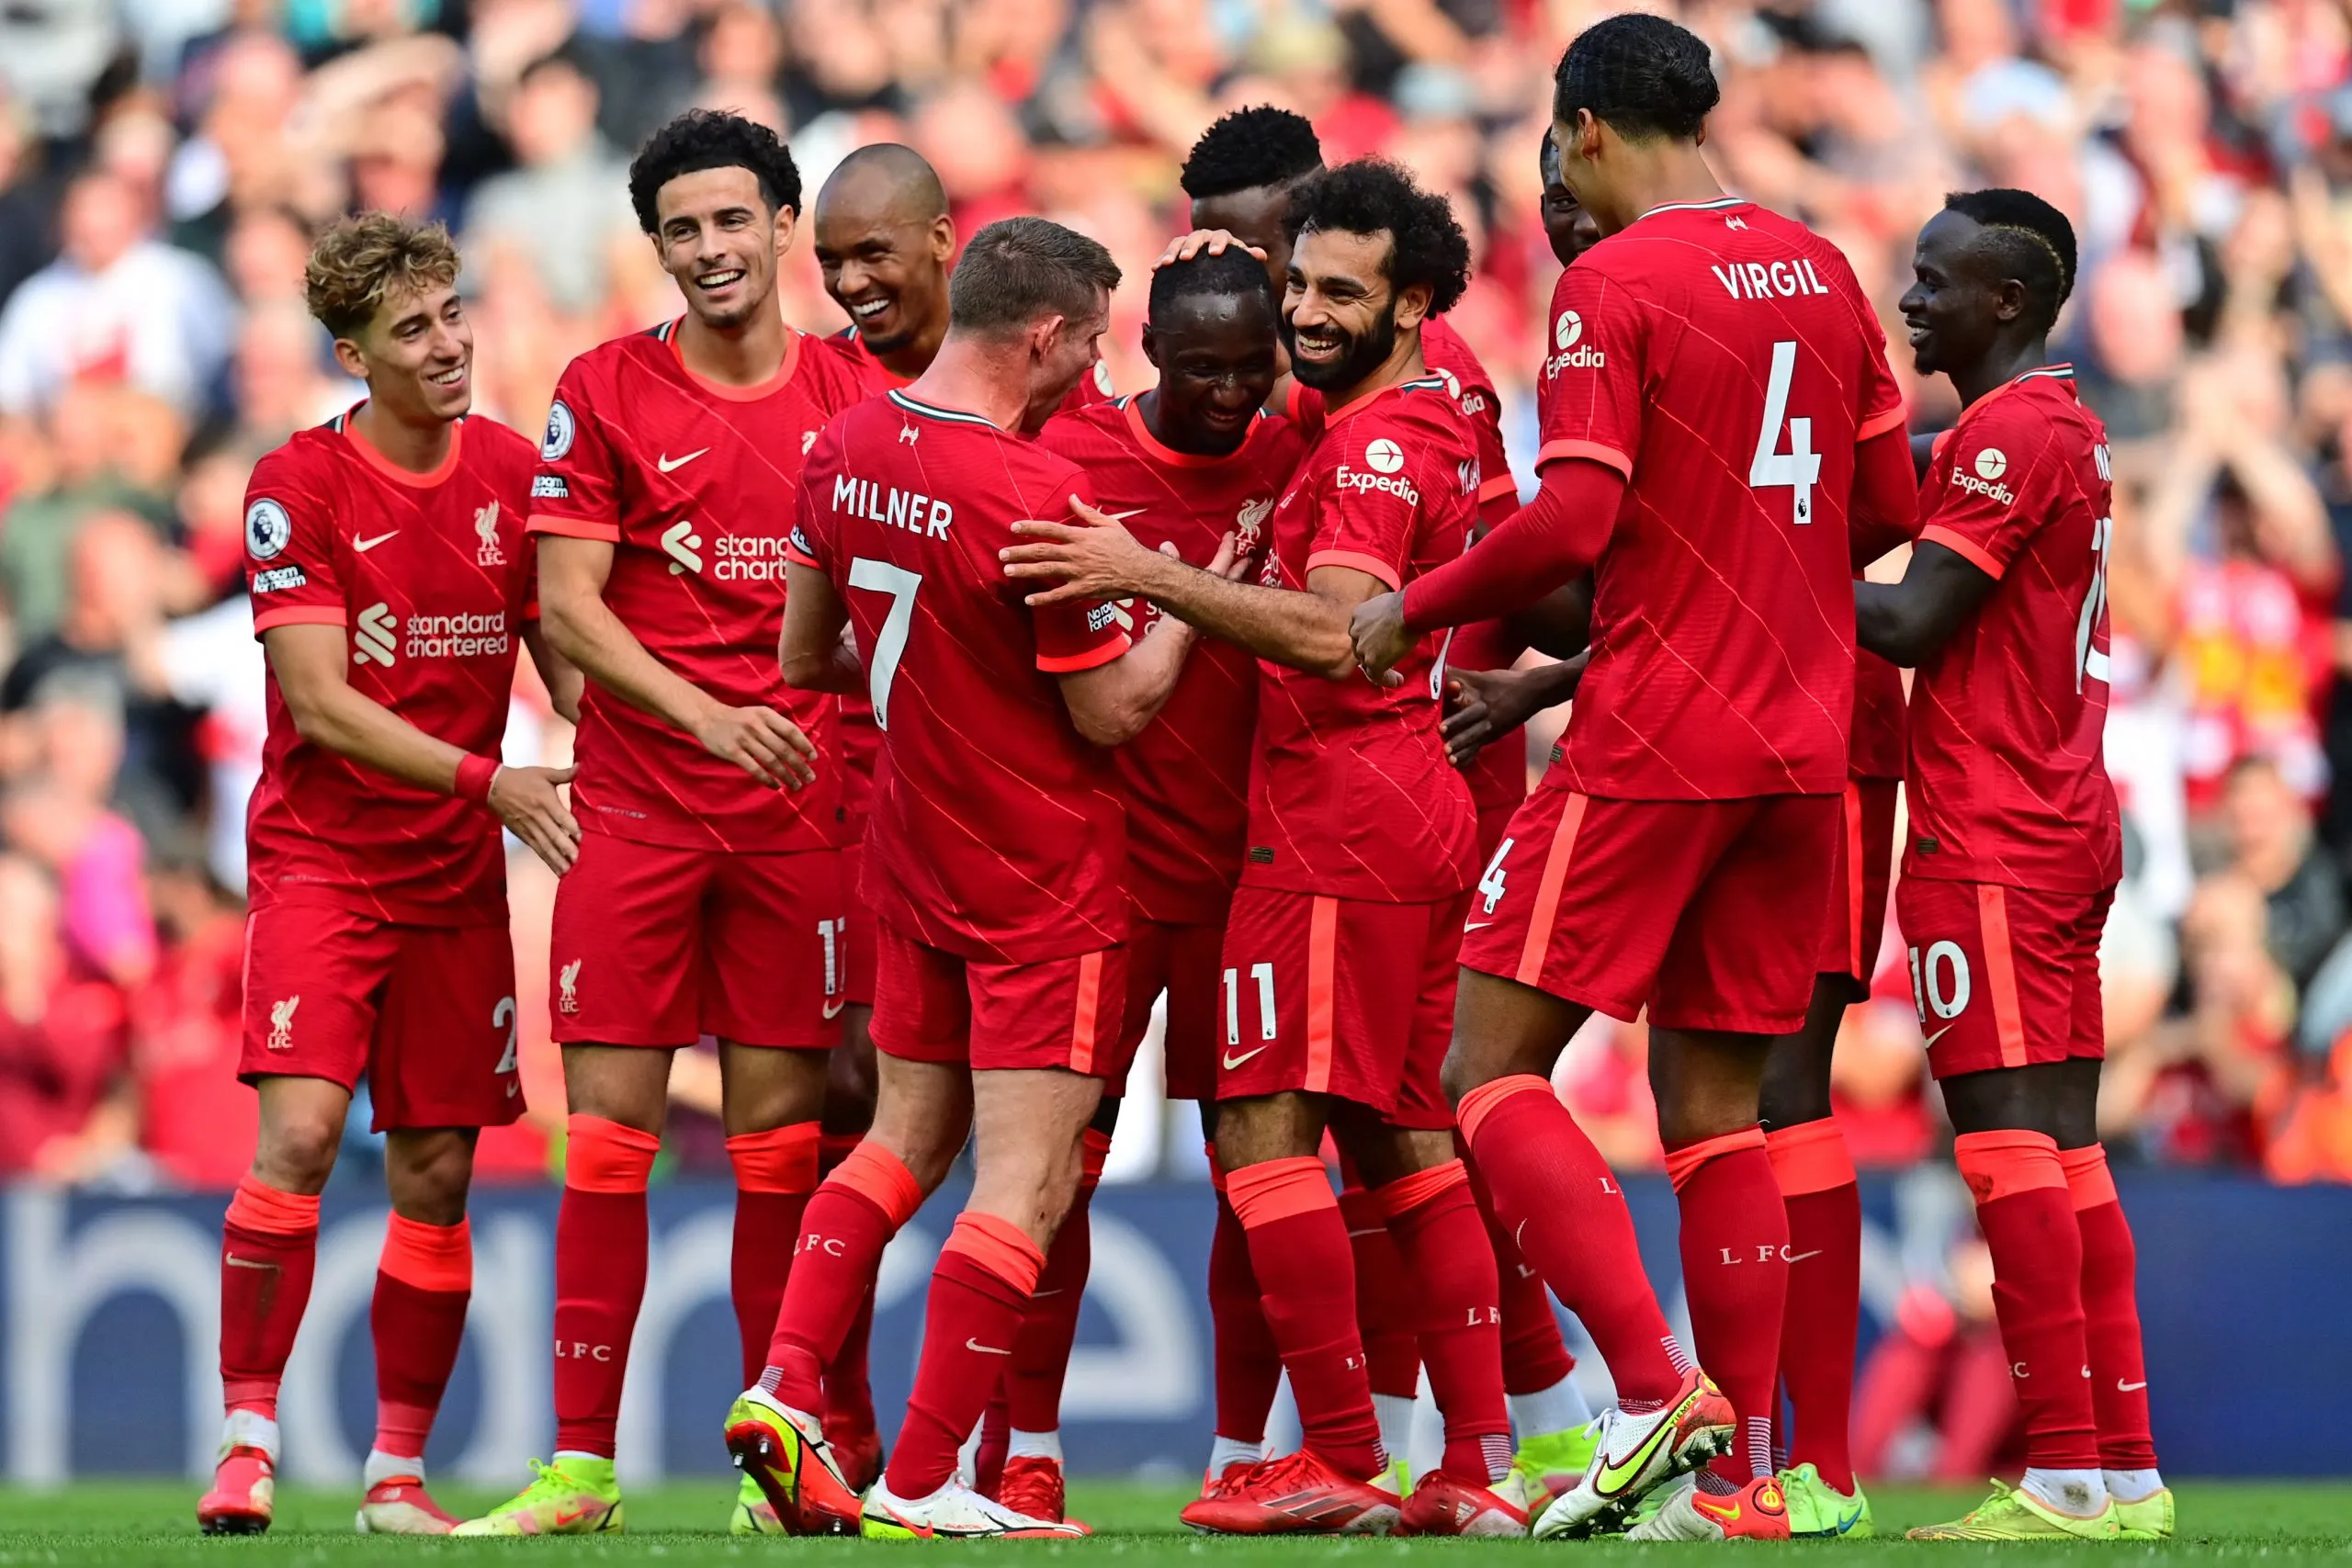 Liverpool chiếm đỉnh bảng - Man City hòa thất vọng - Arsenal thắng trận thứ hai liên tiếp